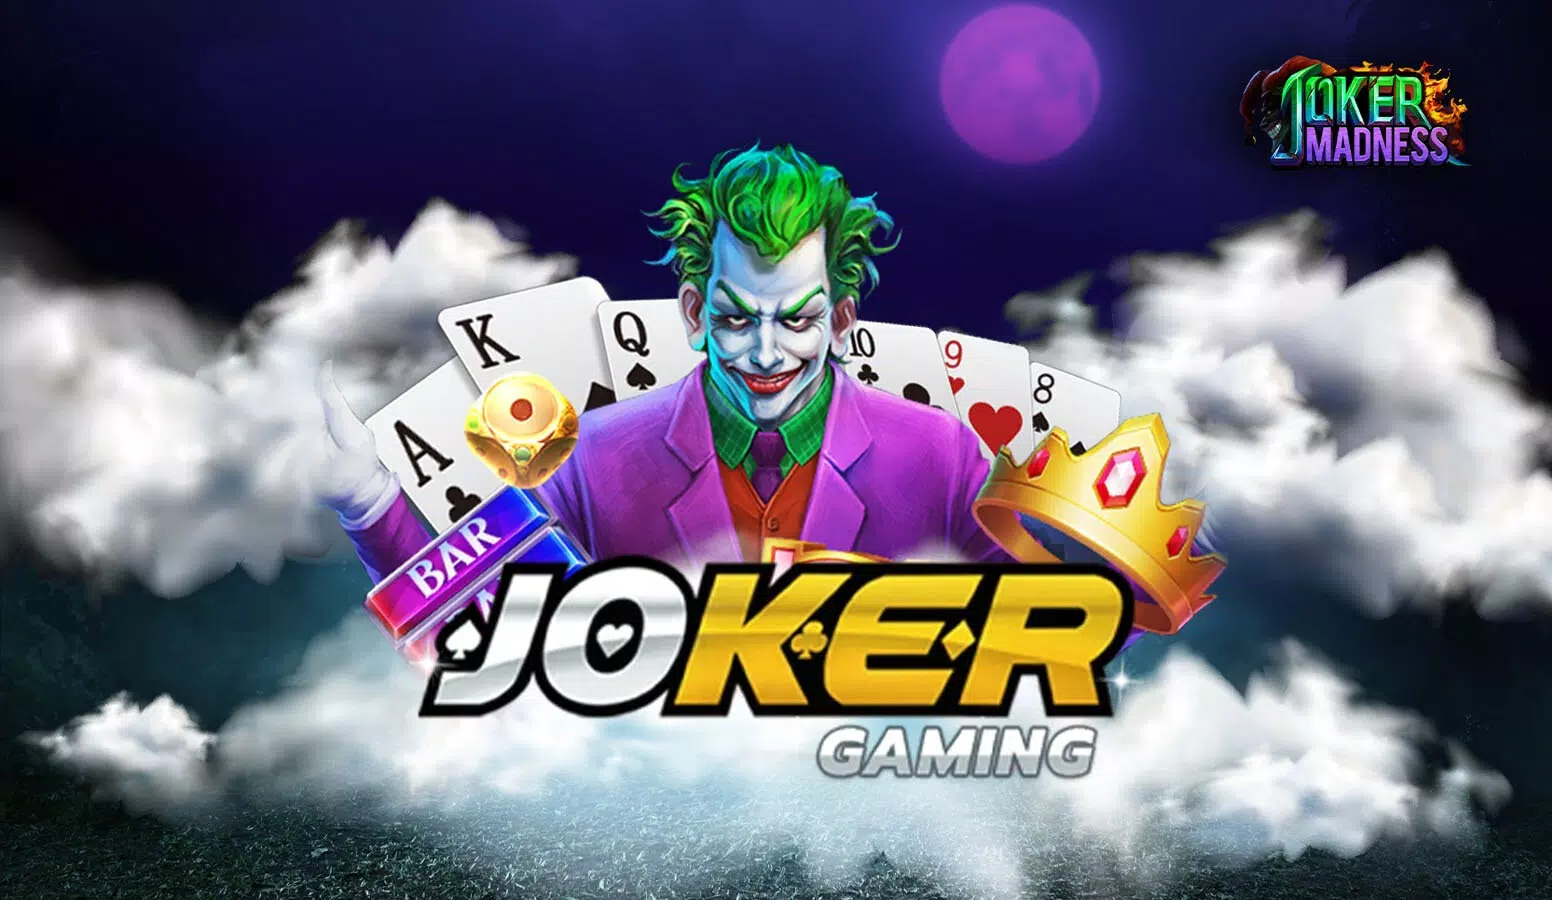 joker gaming